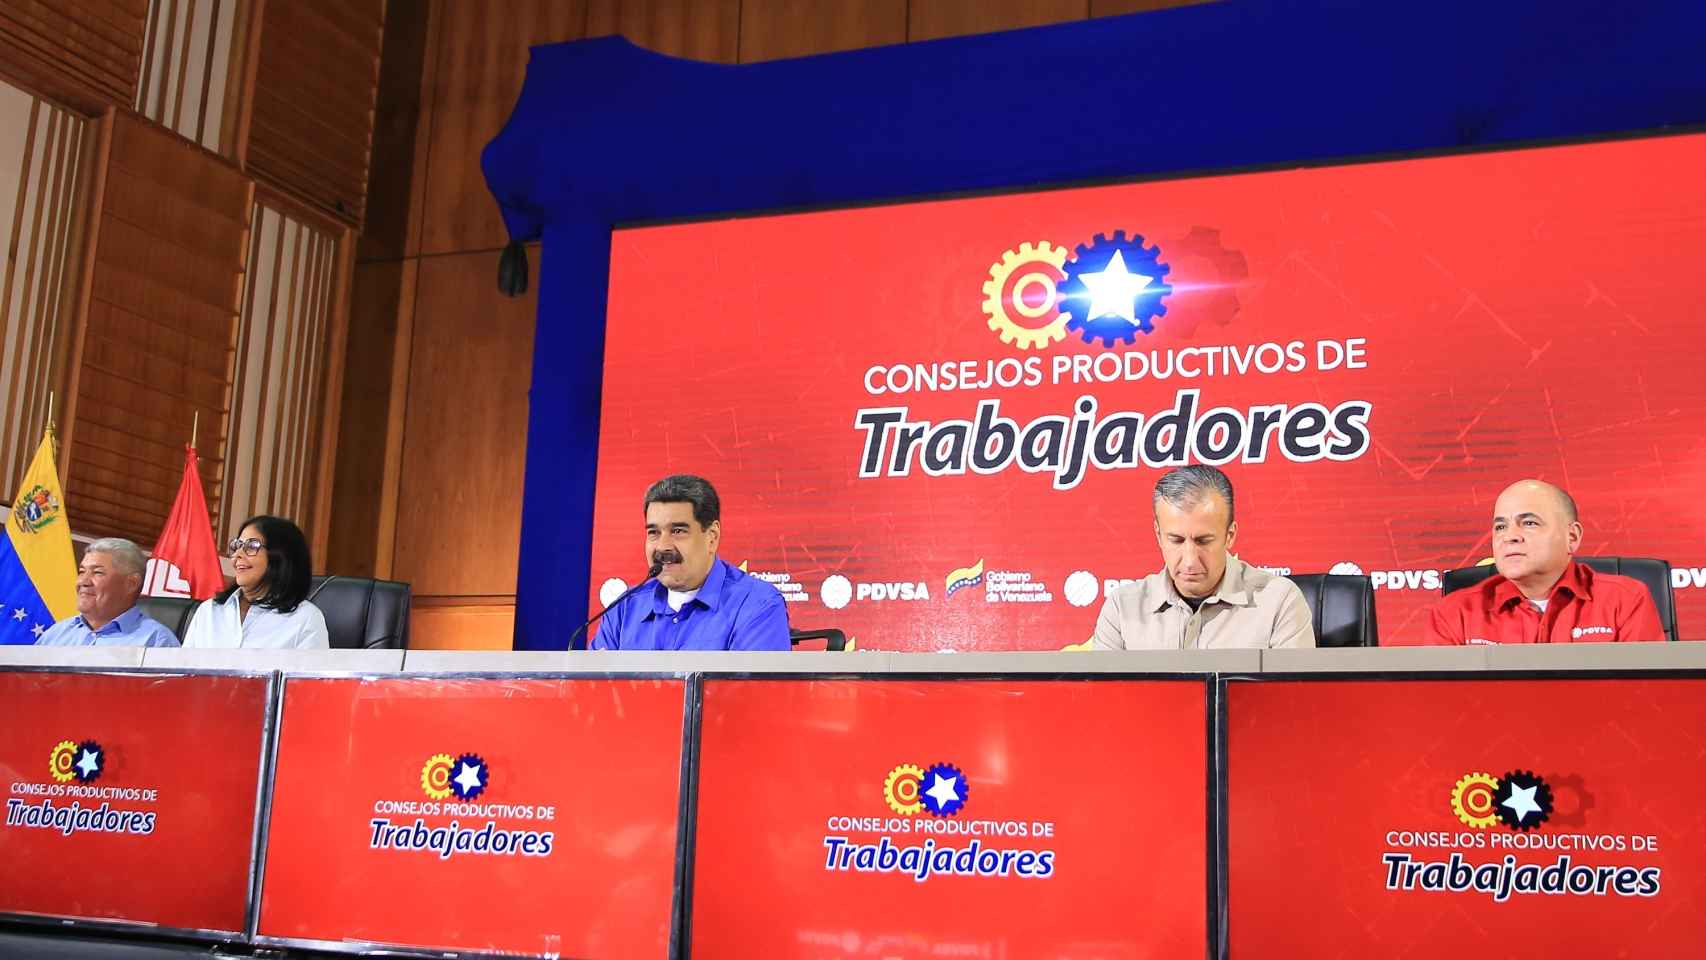 Nicolás Maduro en un acto en Caracas junto a los principales dirigentes chavistas, entre ellos Delcy Rodríguez.